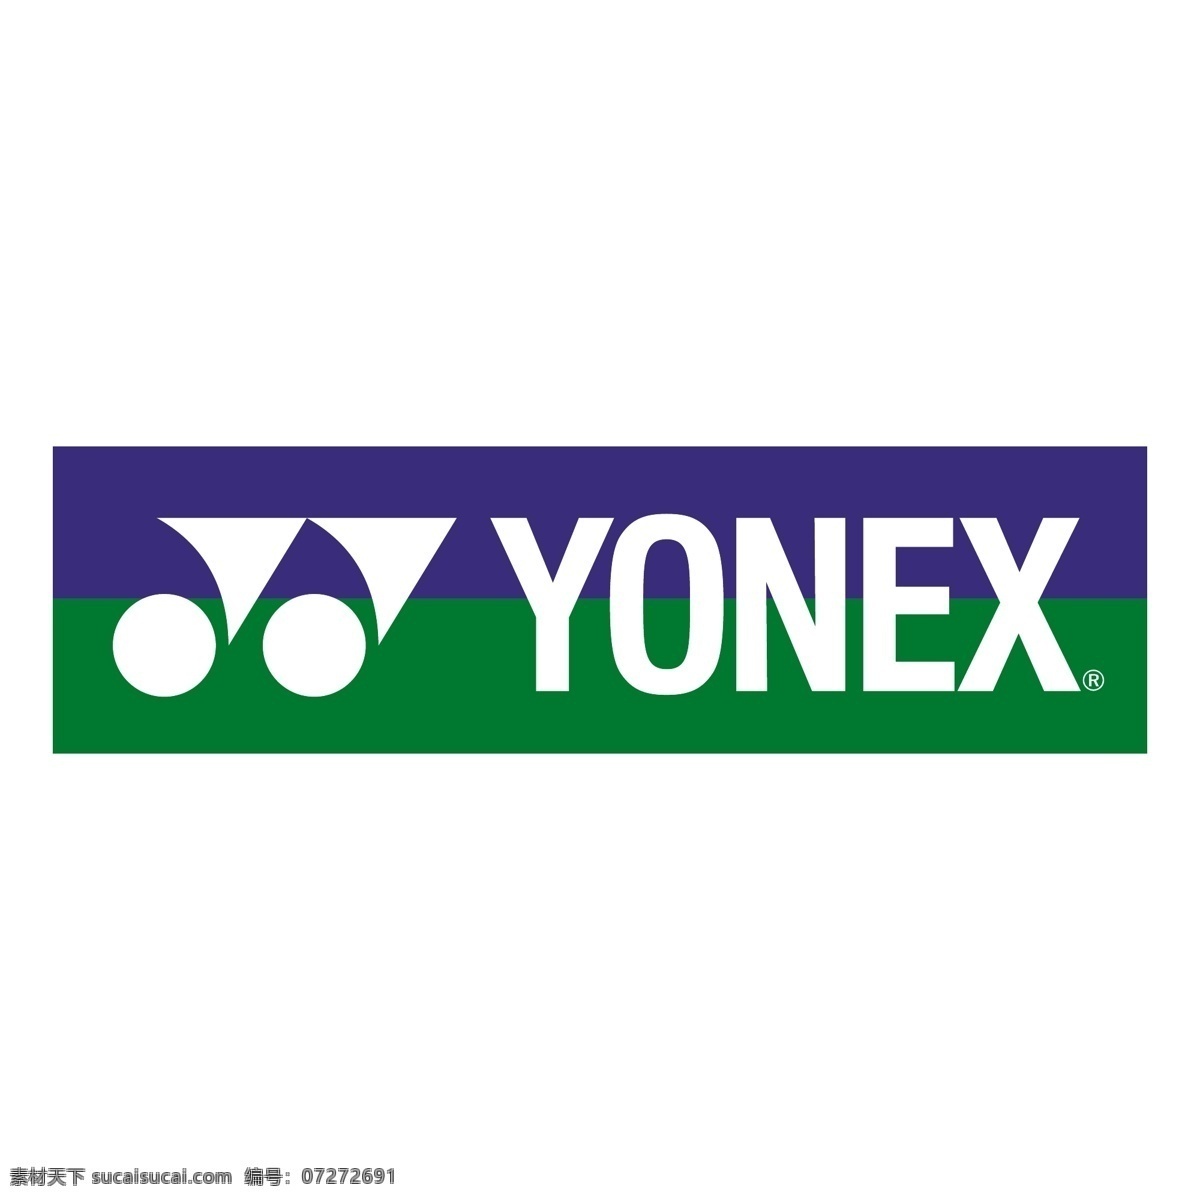 yy公司标志 yonex logo yy 羽毛球 日本企业 标志 企业 标识标志图标 矢量